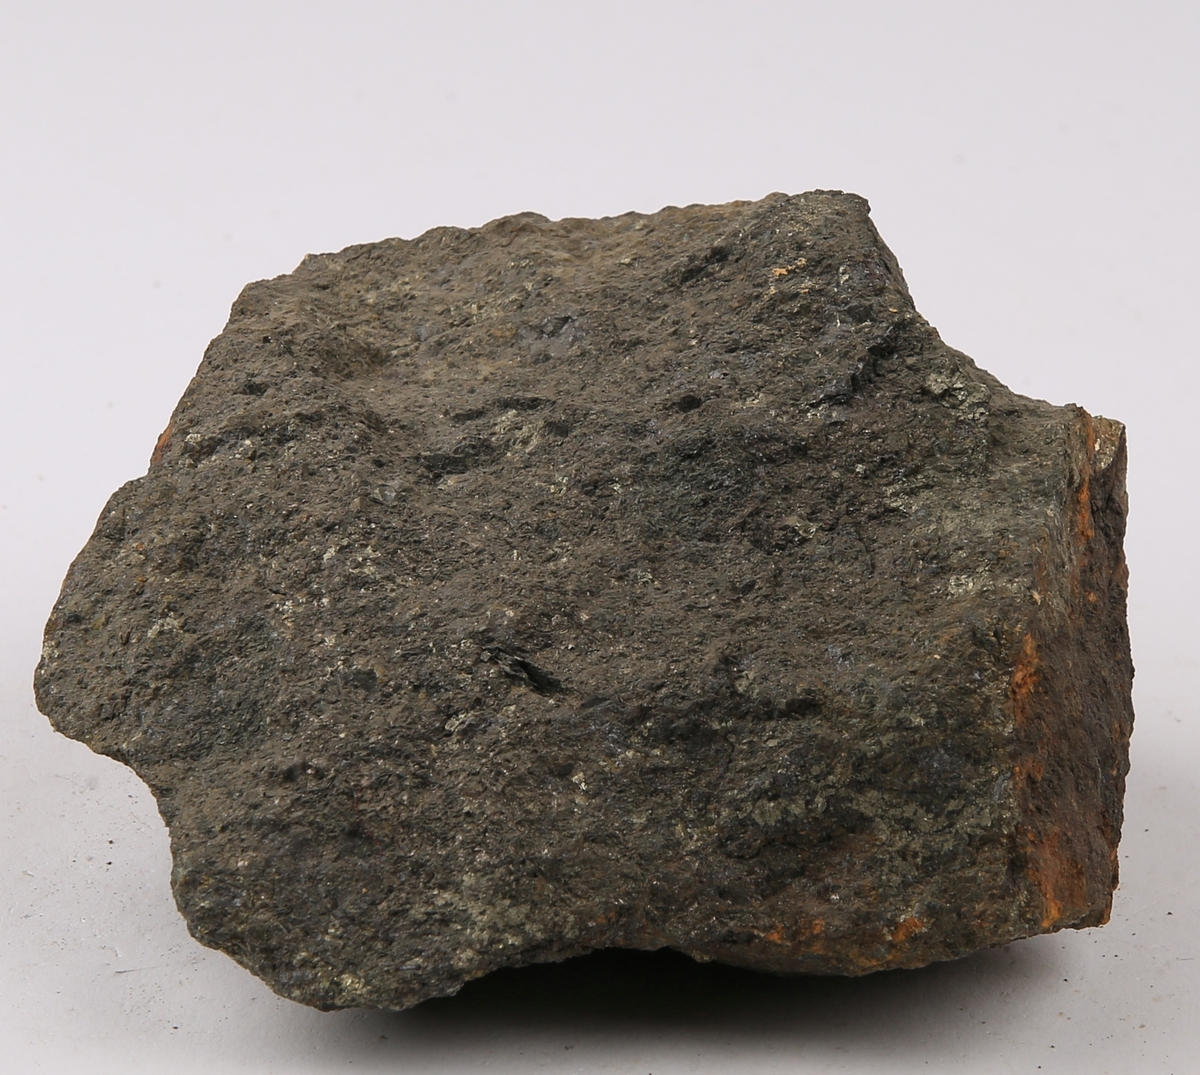 Etikett i eske:
Eker kobbergruve
(fahlbandtype?)
Studentekskursjon GE 320
12/10-79